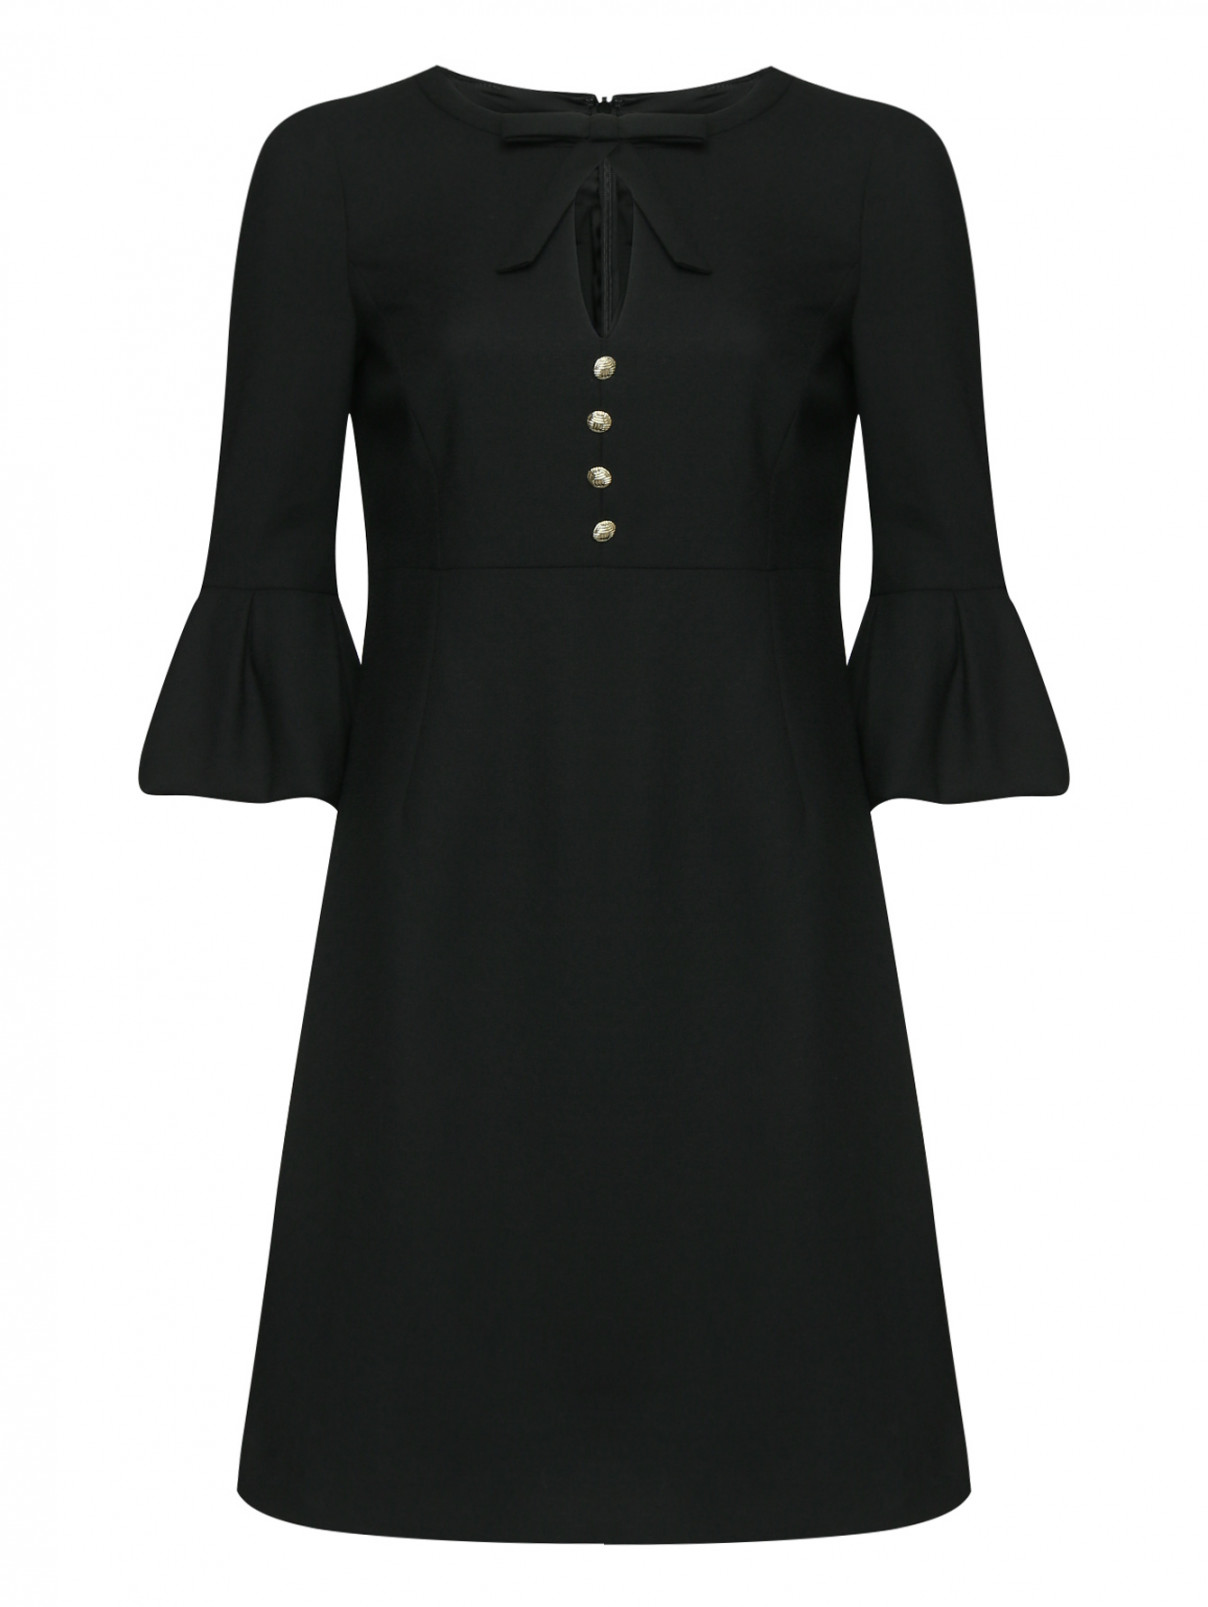 Платье с декоративными пуговицами и бантом Luisa Spagnoli  –  Общий вид  – Цвет:  Черный